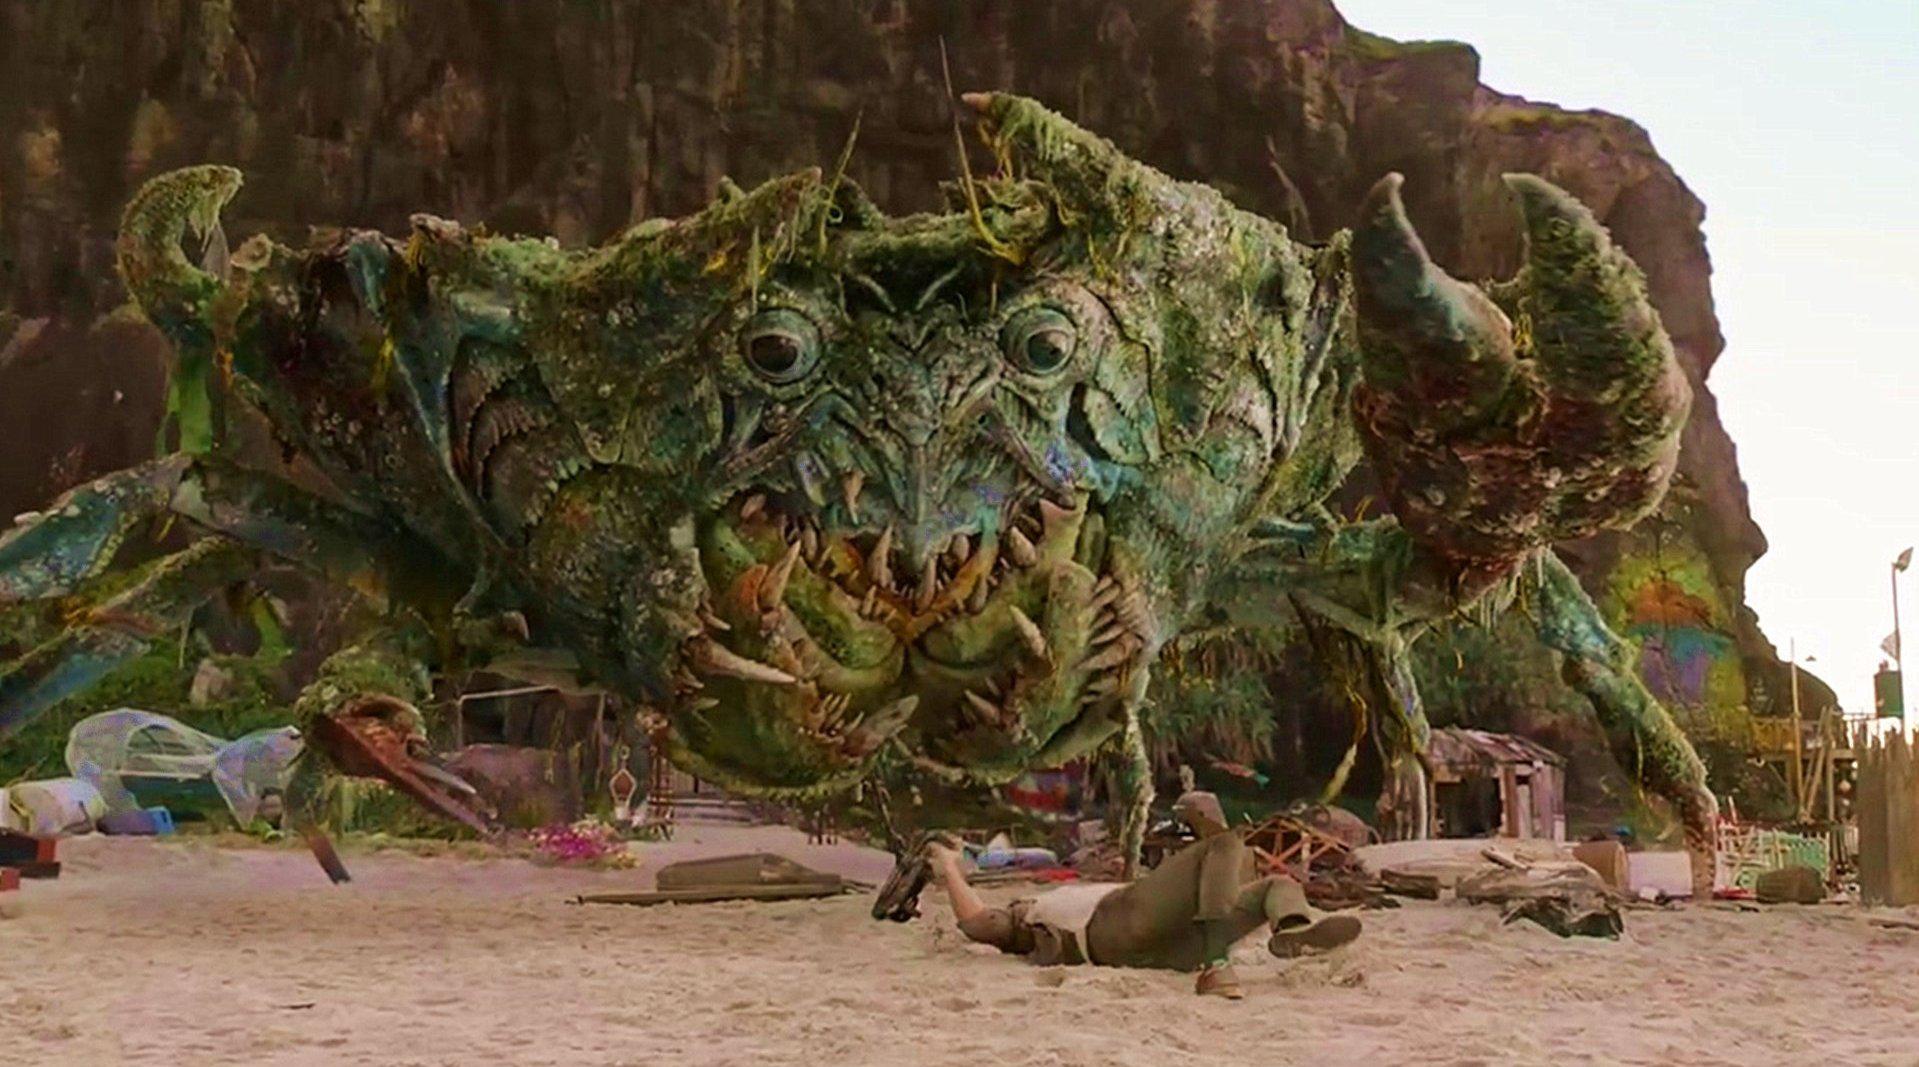 最新科幻冒险片,动物变异成怪兽,螃蟹都有十几吨,《爱与怪物》